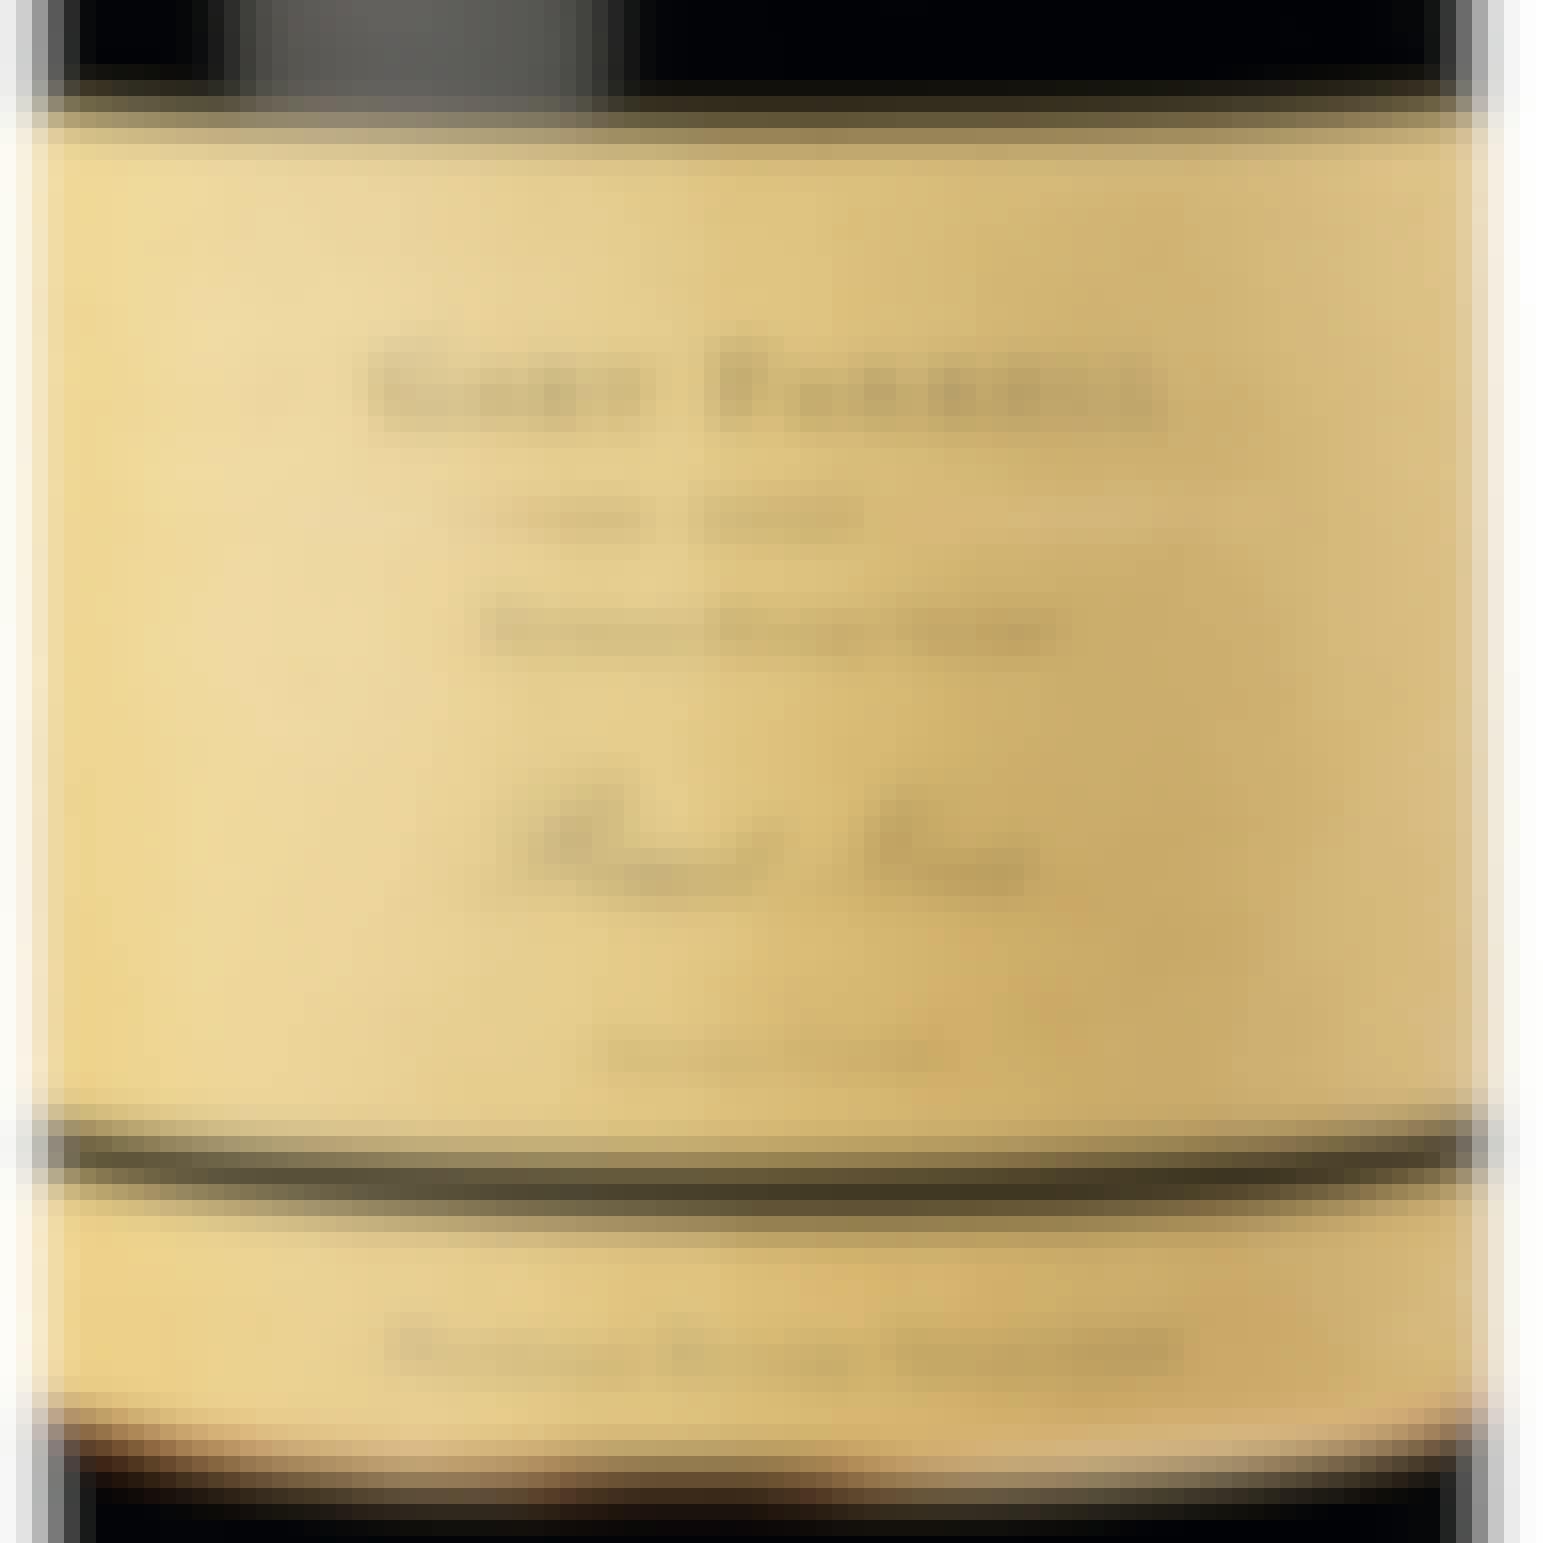 Gary Farrell Russian River Selection Pinot Noir 2021 750ml